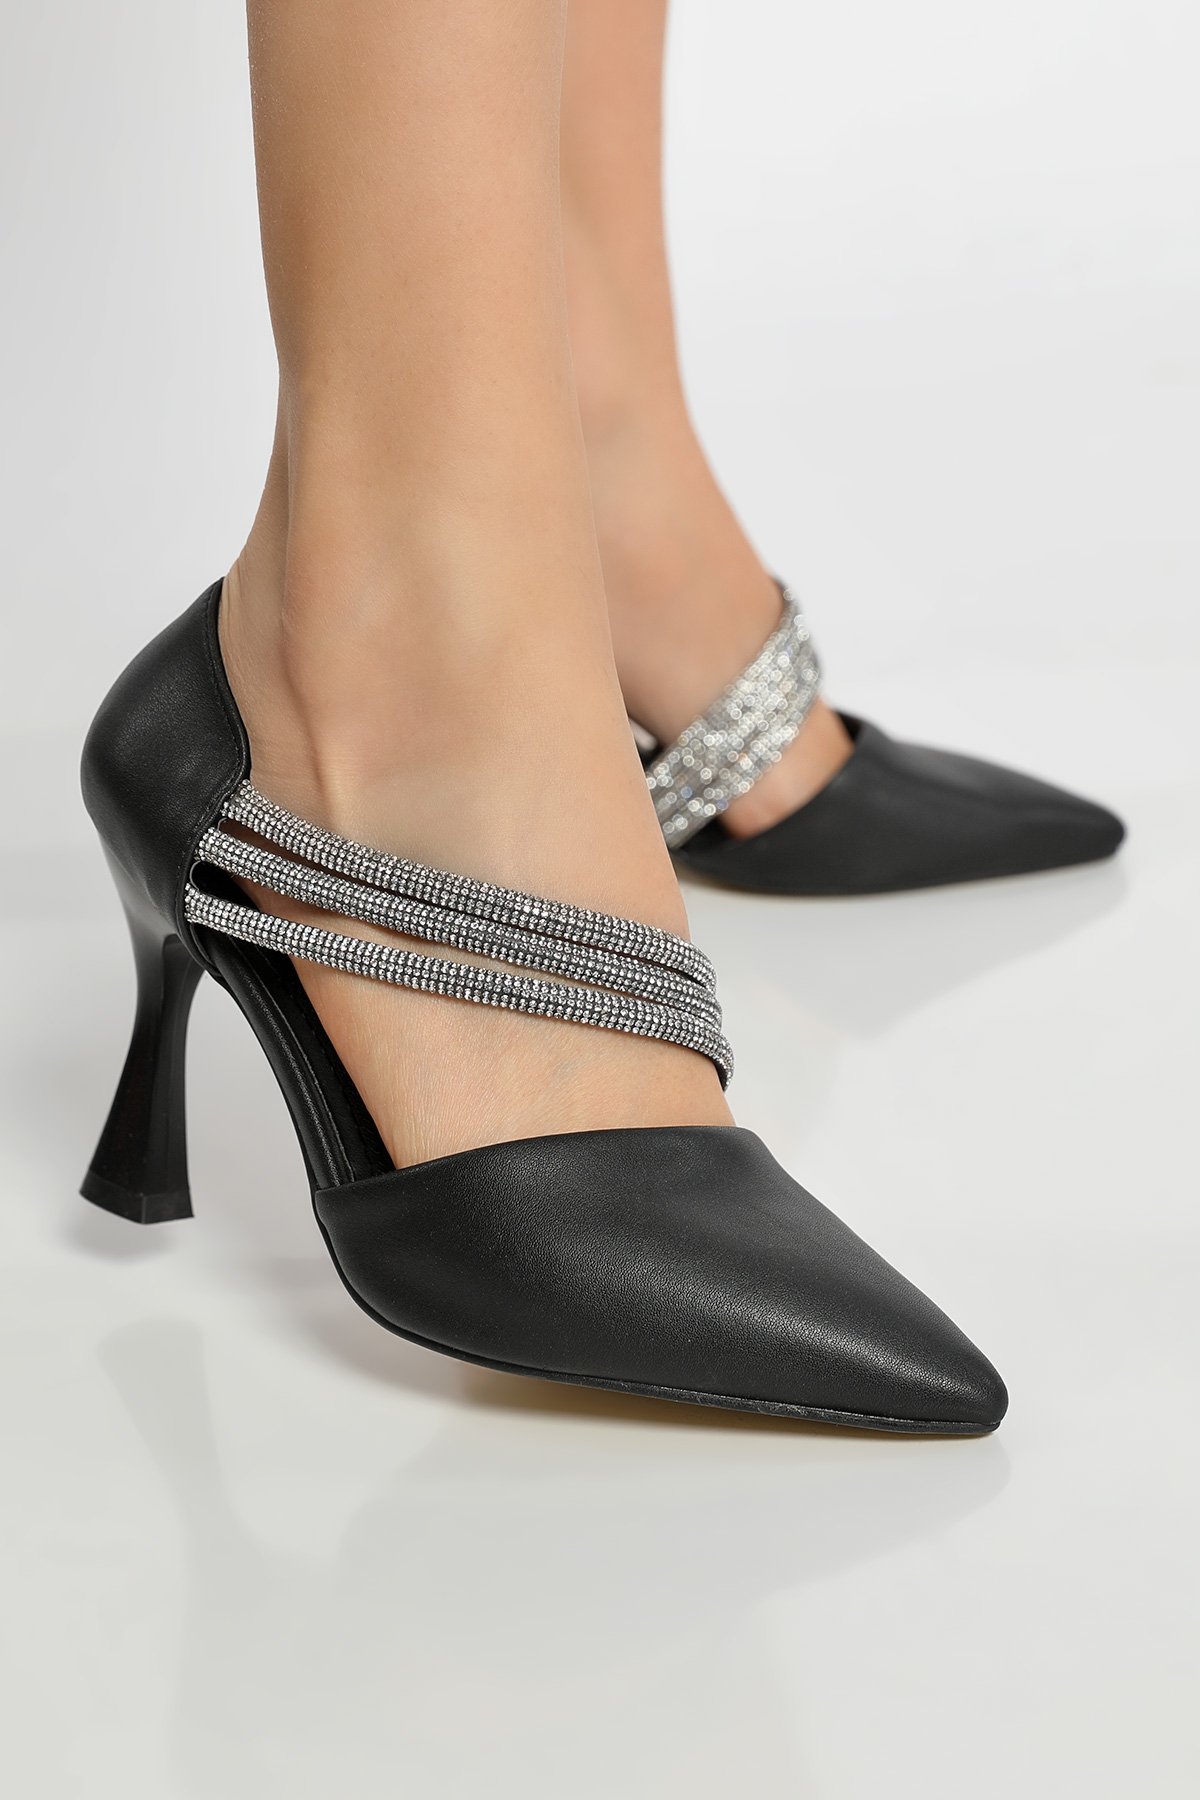 Kadın Taşlı Topuklu Ayakkabı Siyah 513576 - tozlu.com